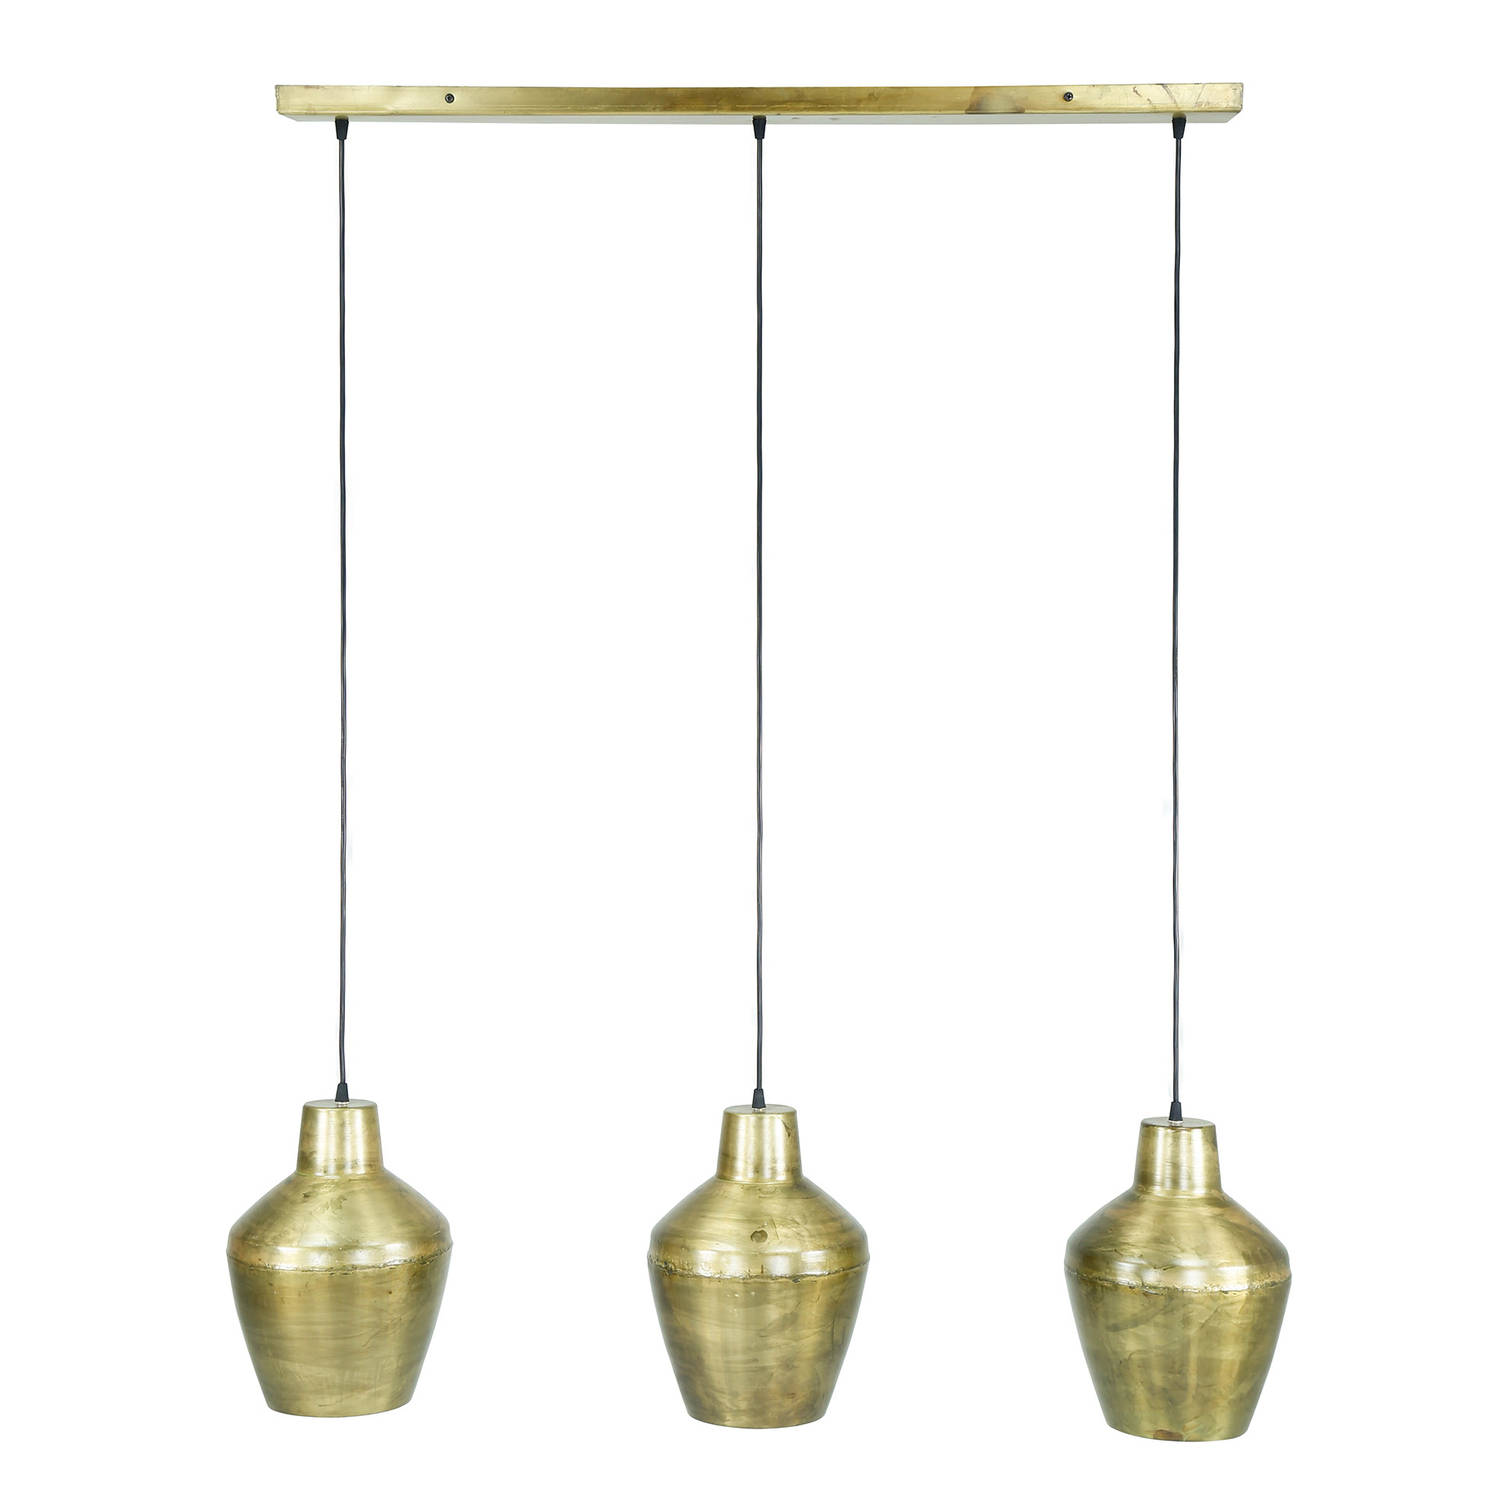 Giga Meubel Gm Hanglamp Metaal - 3-lichts - 24x105x150cm - Lamp Casablanca